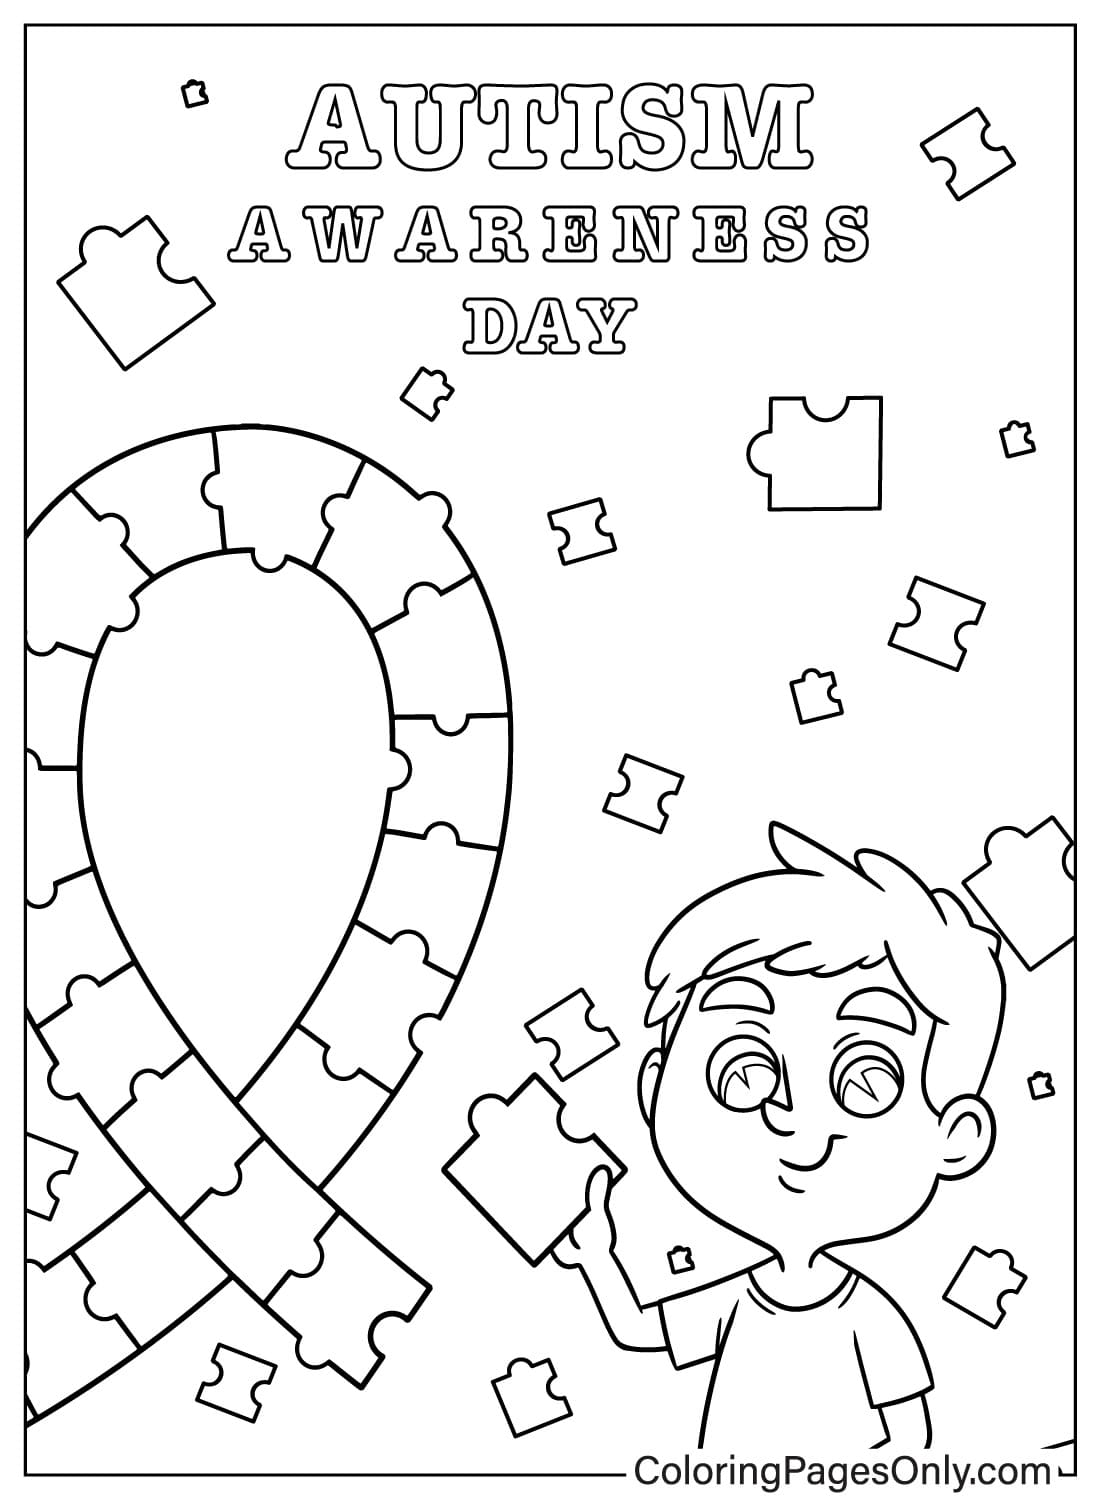 Pagina da colorare per la consapevolezza dell'autismo per bambini in età prescolare dalla Giornata mondiale della consapevolezza dell'autismo